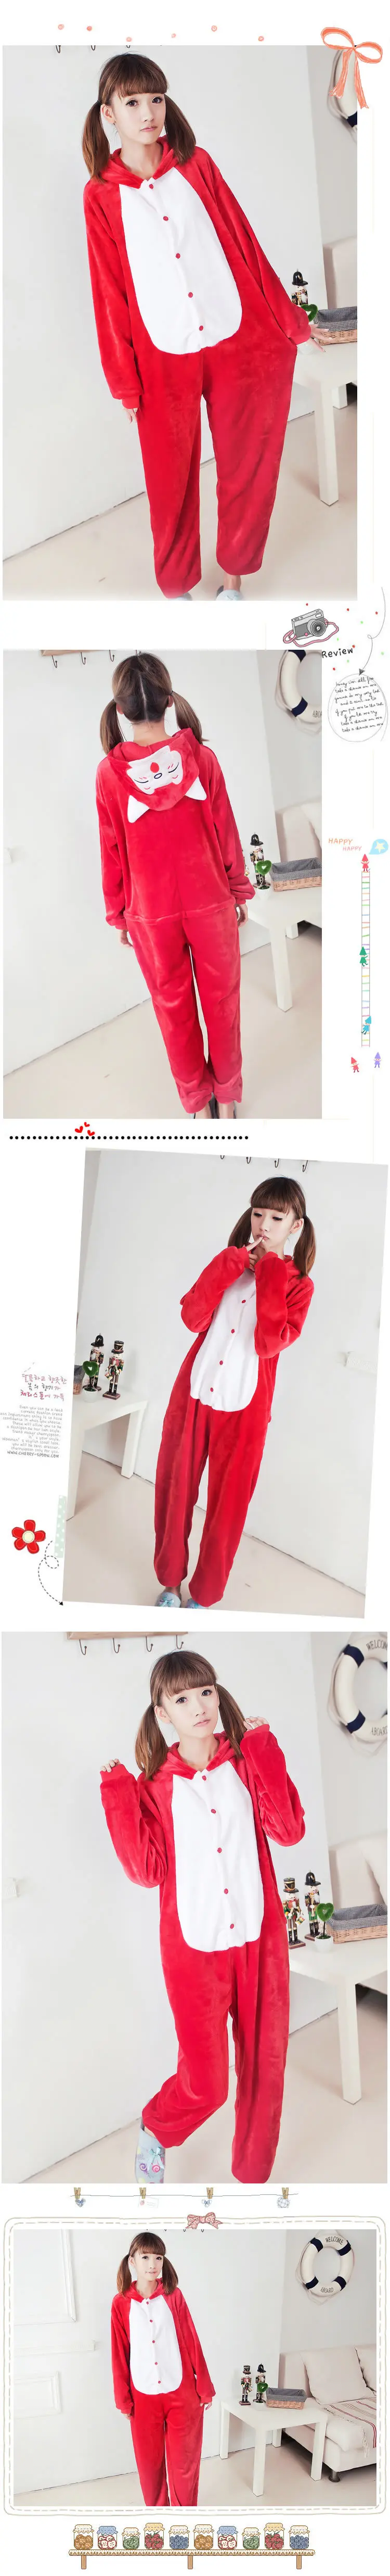 Али красная лисичка-Пижама Костюм для косплея киругуми унисекс пижамы Вечеринка ночная рубашка с карманами